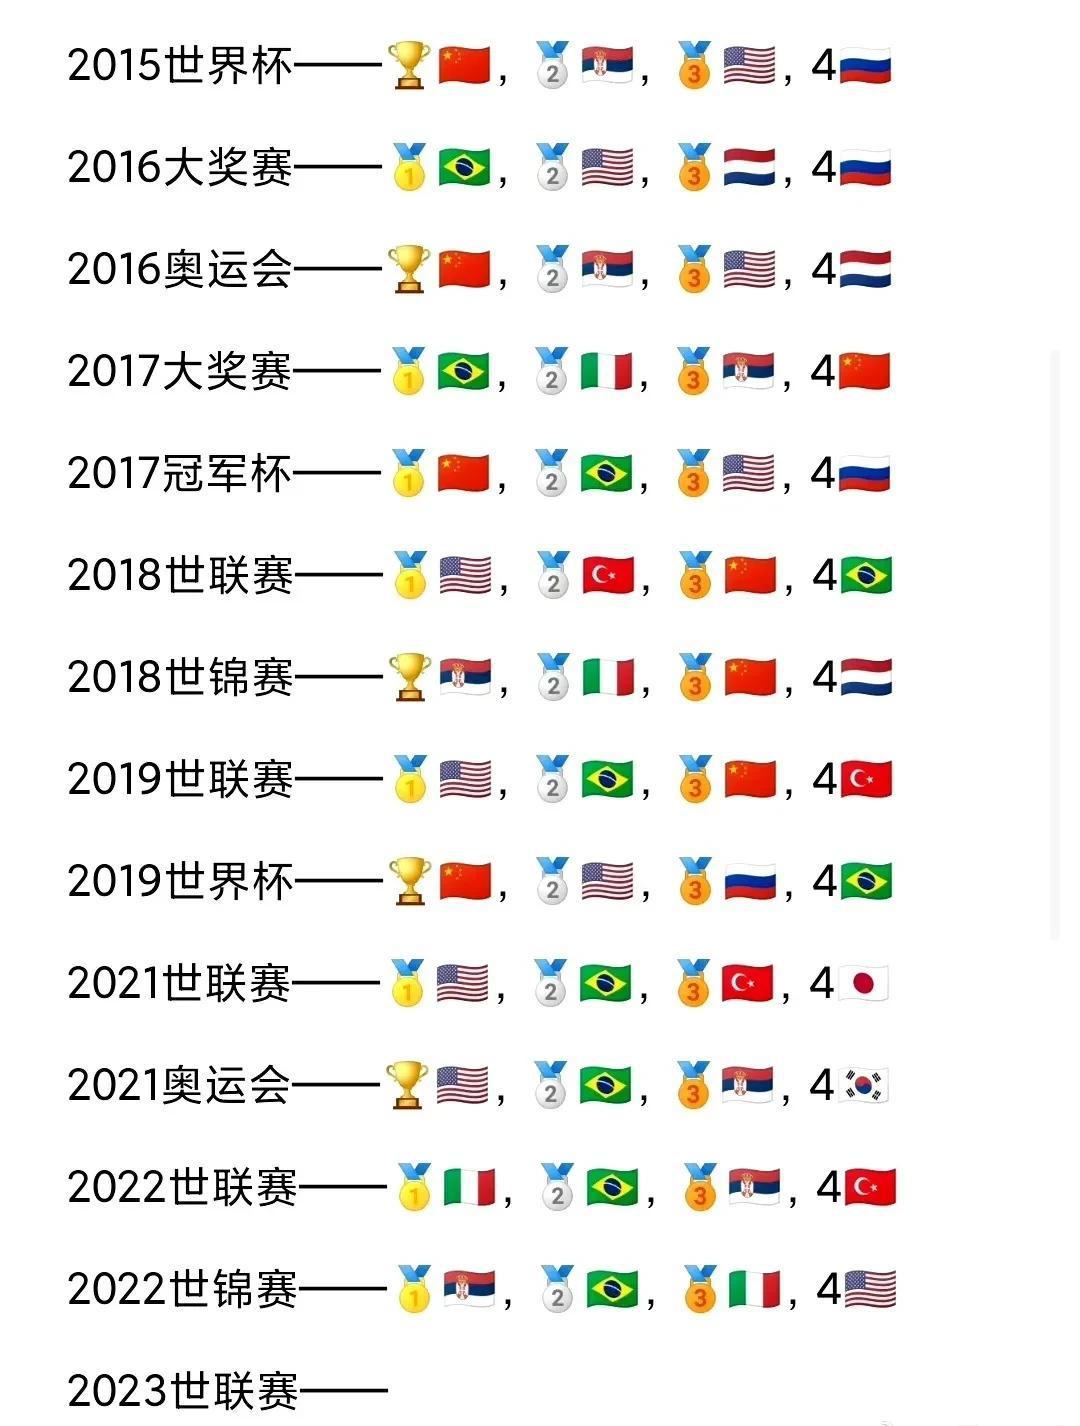 中国女排时隔四年重回世界大赛决赛，中国女排是奥运会、世界杯和冠军杯冠军，就差一座